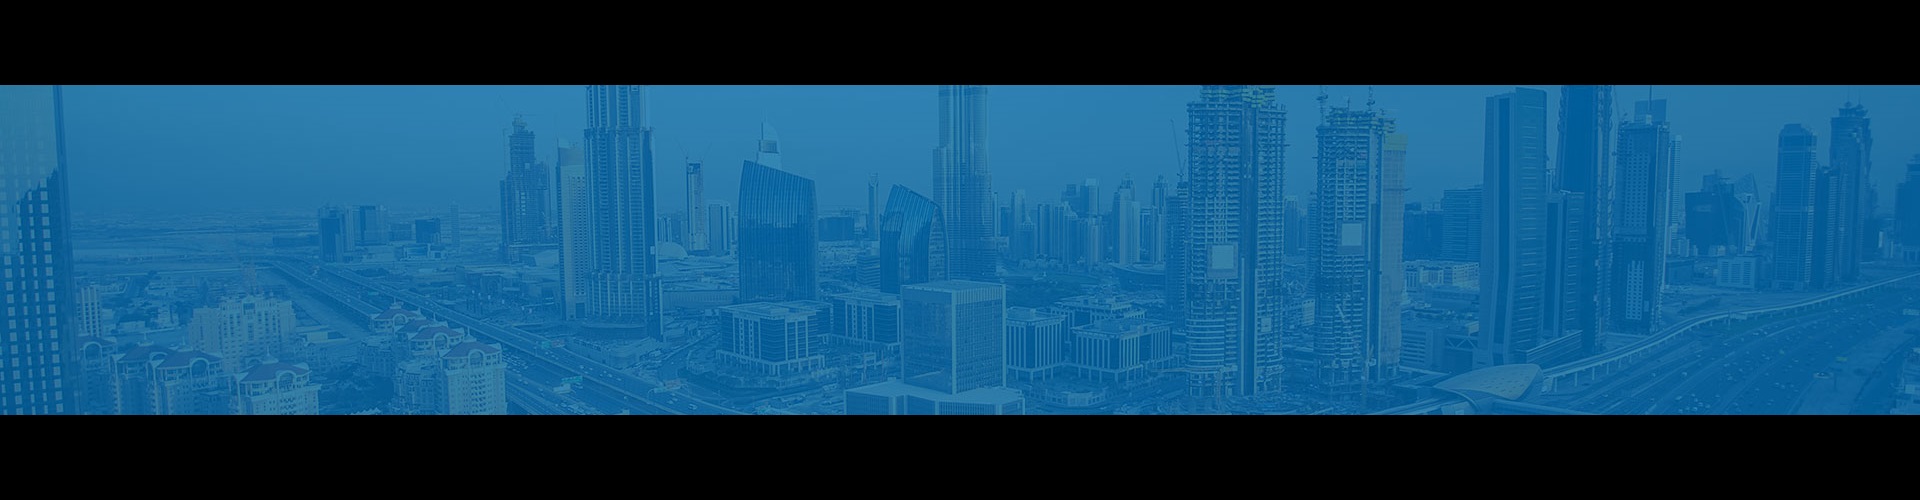 Dubai cityscape with blue overlay. 